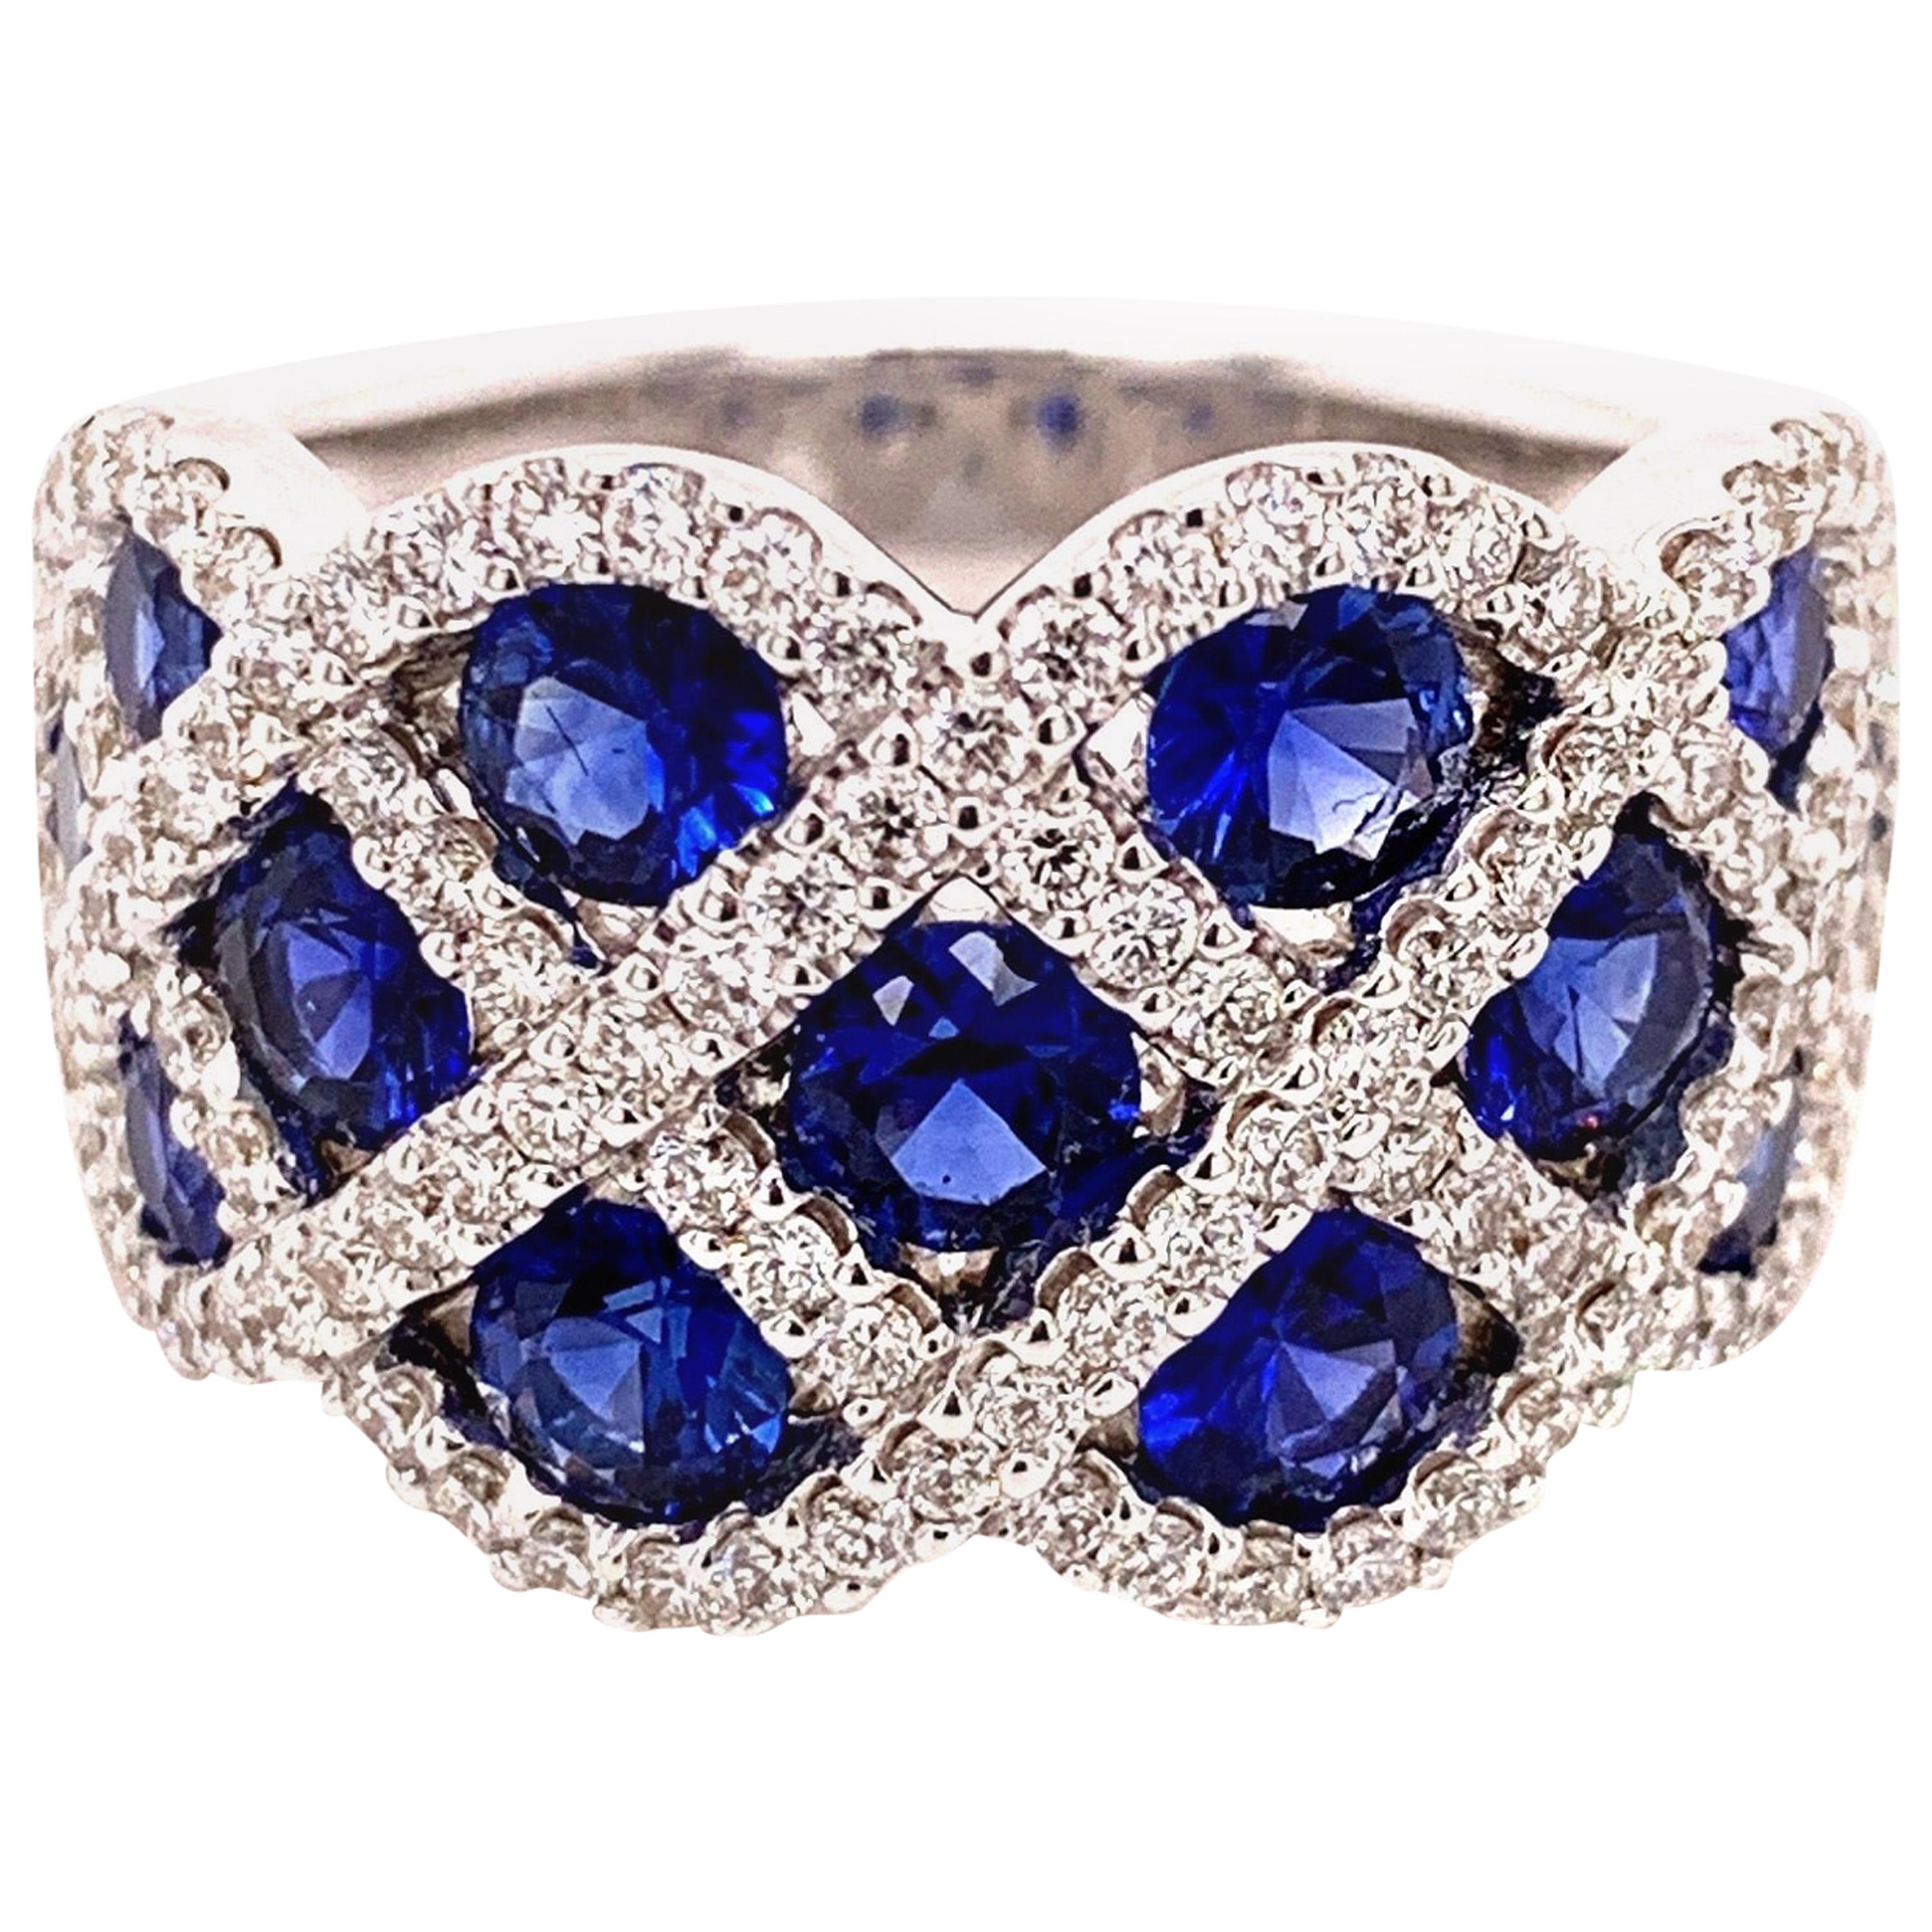 2.27 Carat Sapphire Diamond Ring